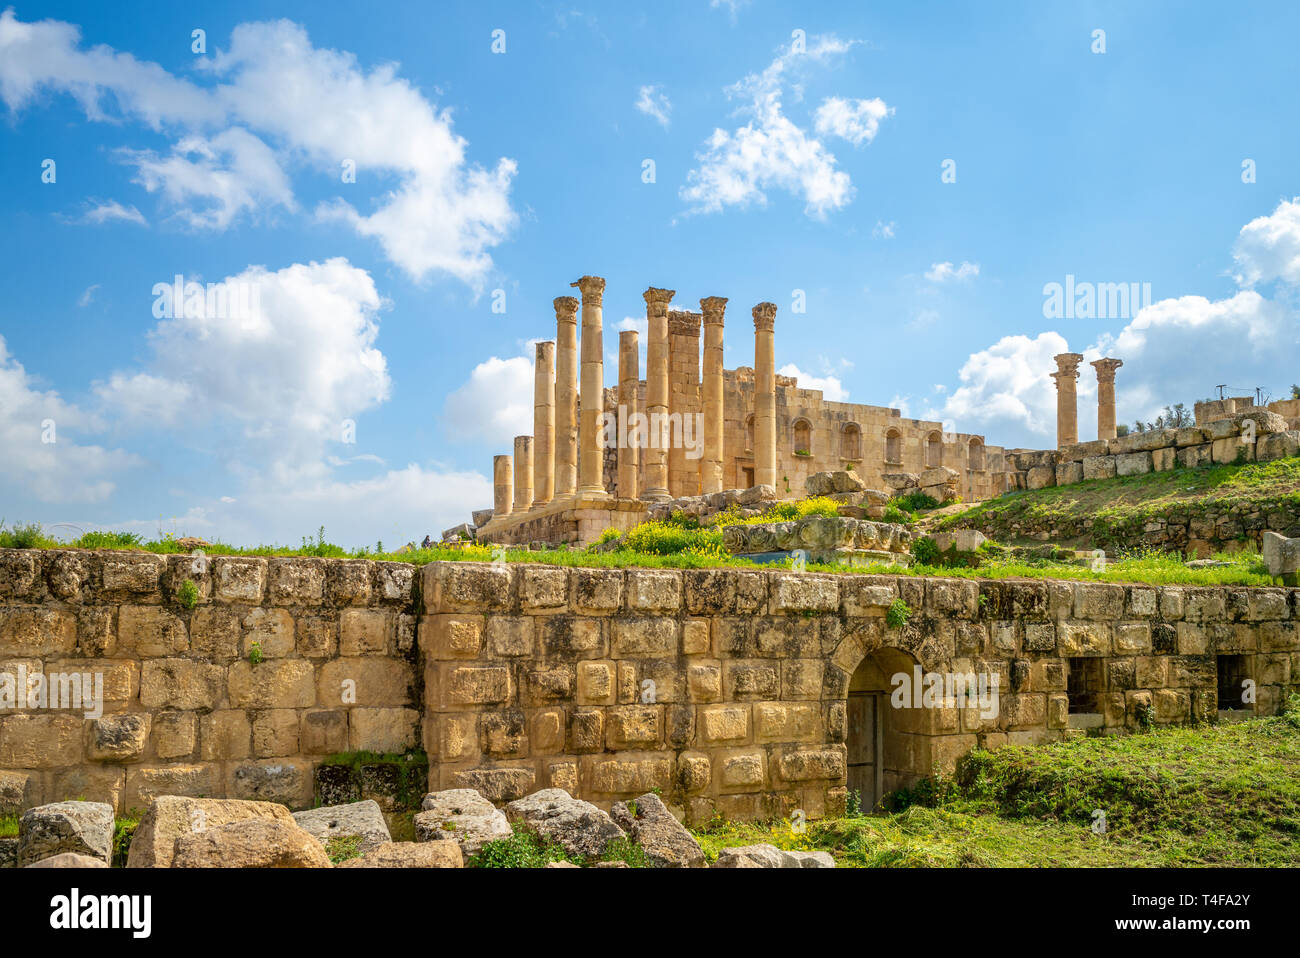 Temple of Zeus in jerash, amman, jordan Stock Photo